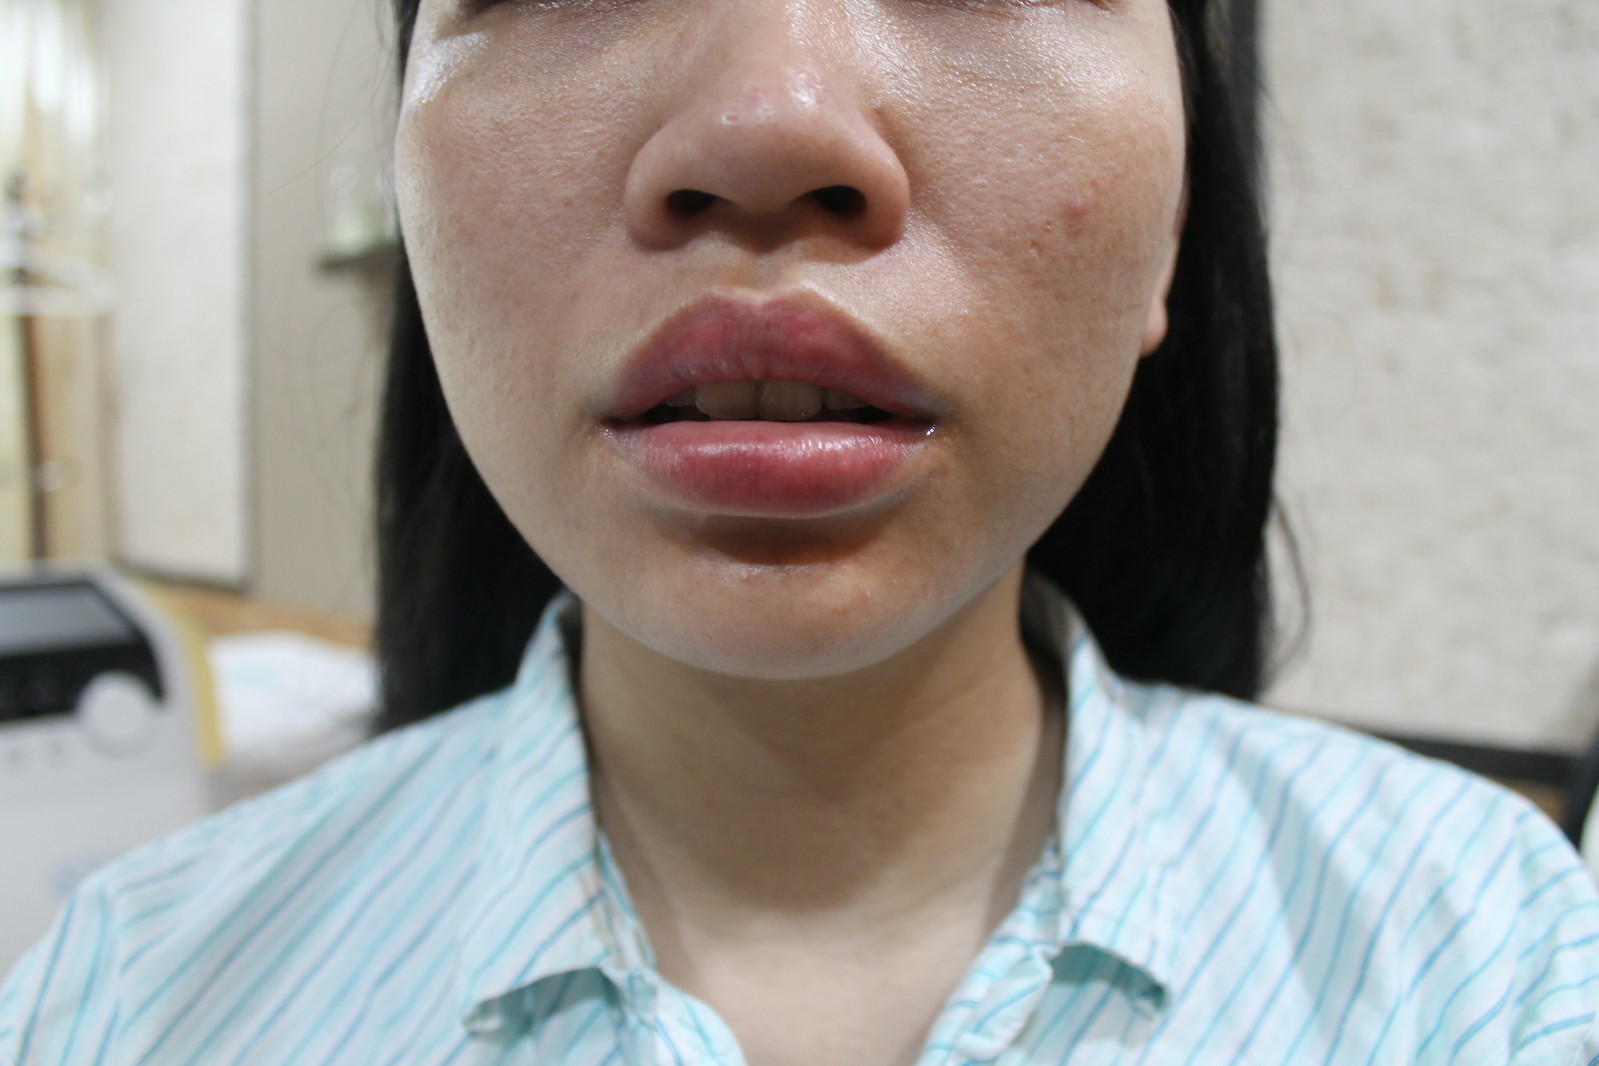 唇の印象を変える 新しいヒアルロン酸〜ジュビダームビスタ®︎ボルベラ XC治療開始 | 医療法人涼葵会 WCLINIC 足立真由美のブログ